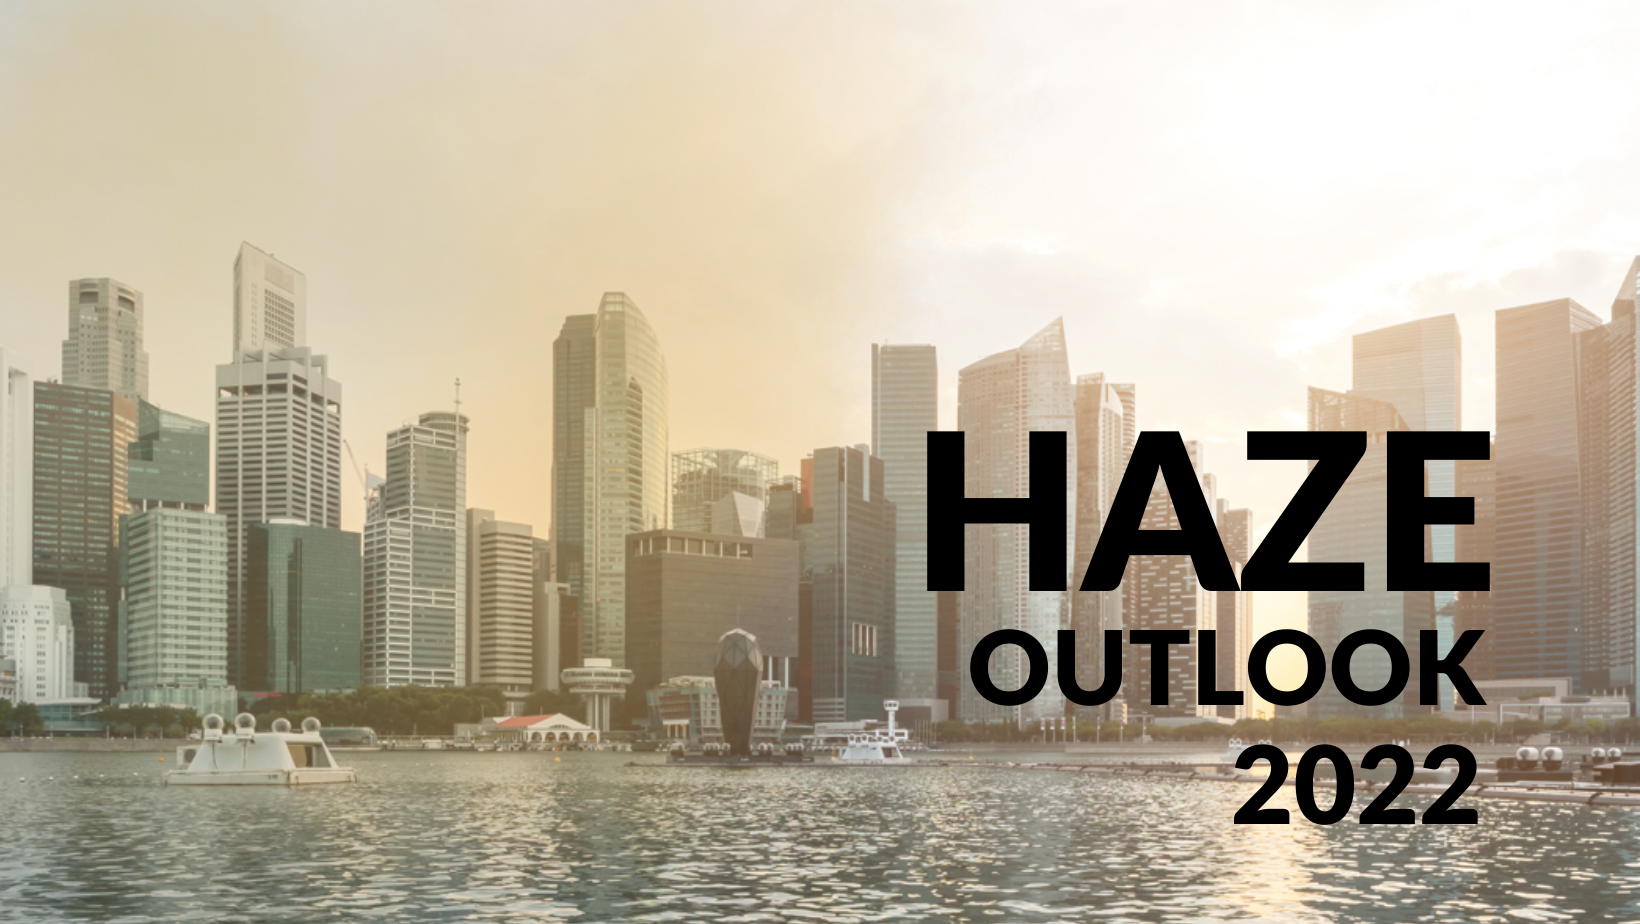 Haze Outlook 2022 Report